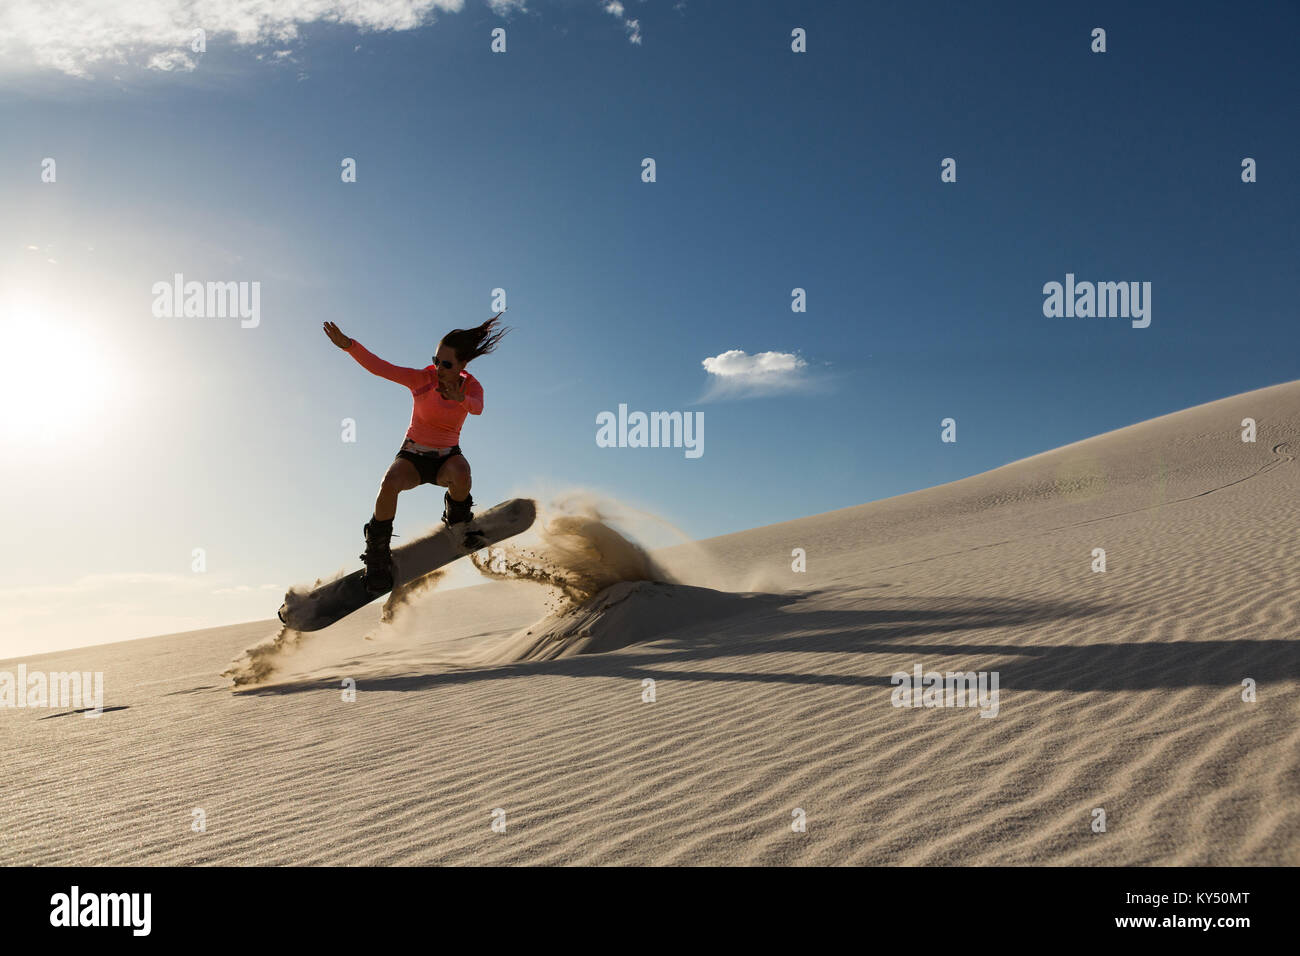 Man sandboarding on sand dune Stock Photo